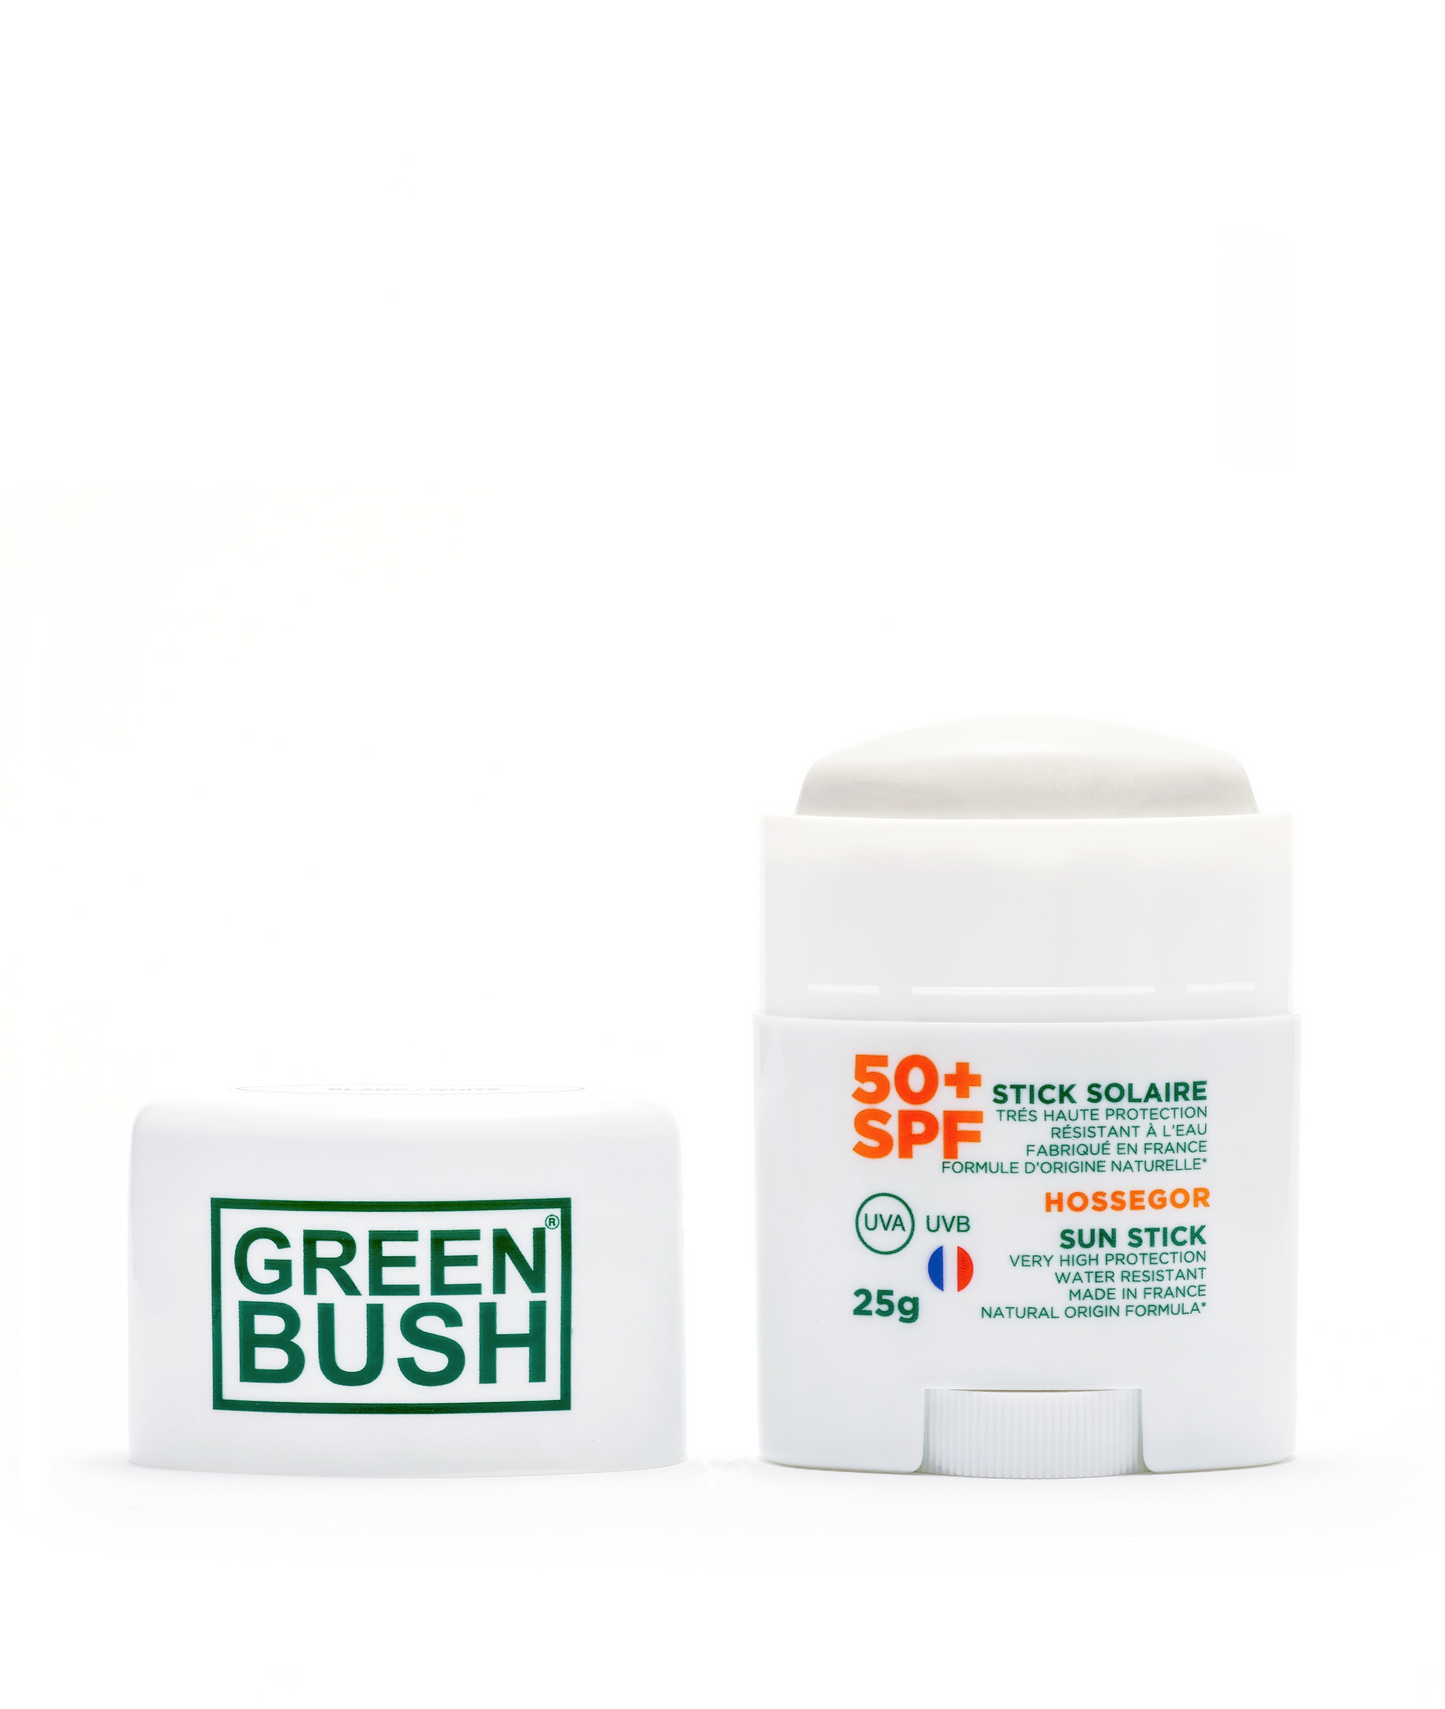 Stick solaire SPF50+ blanc Greenbush 